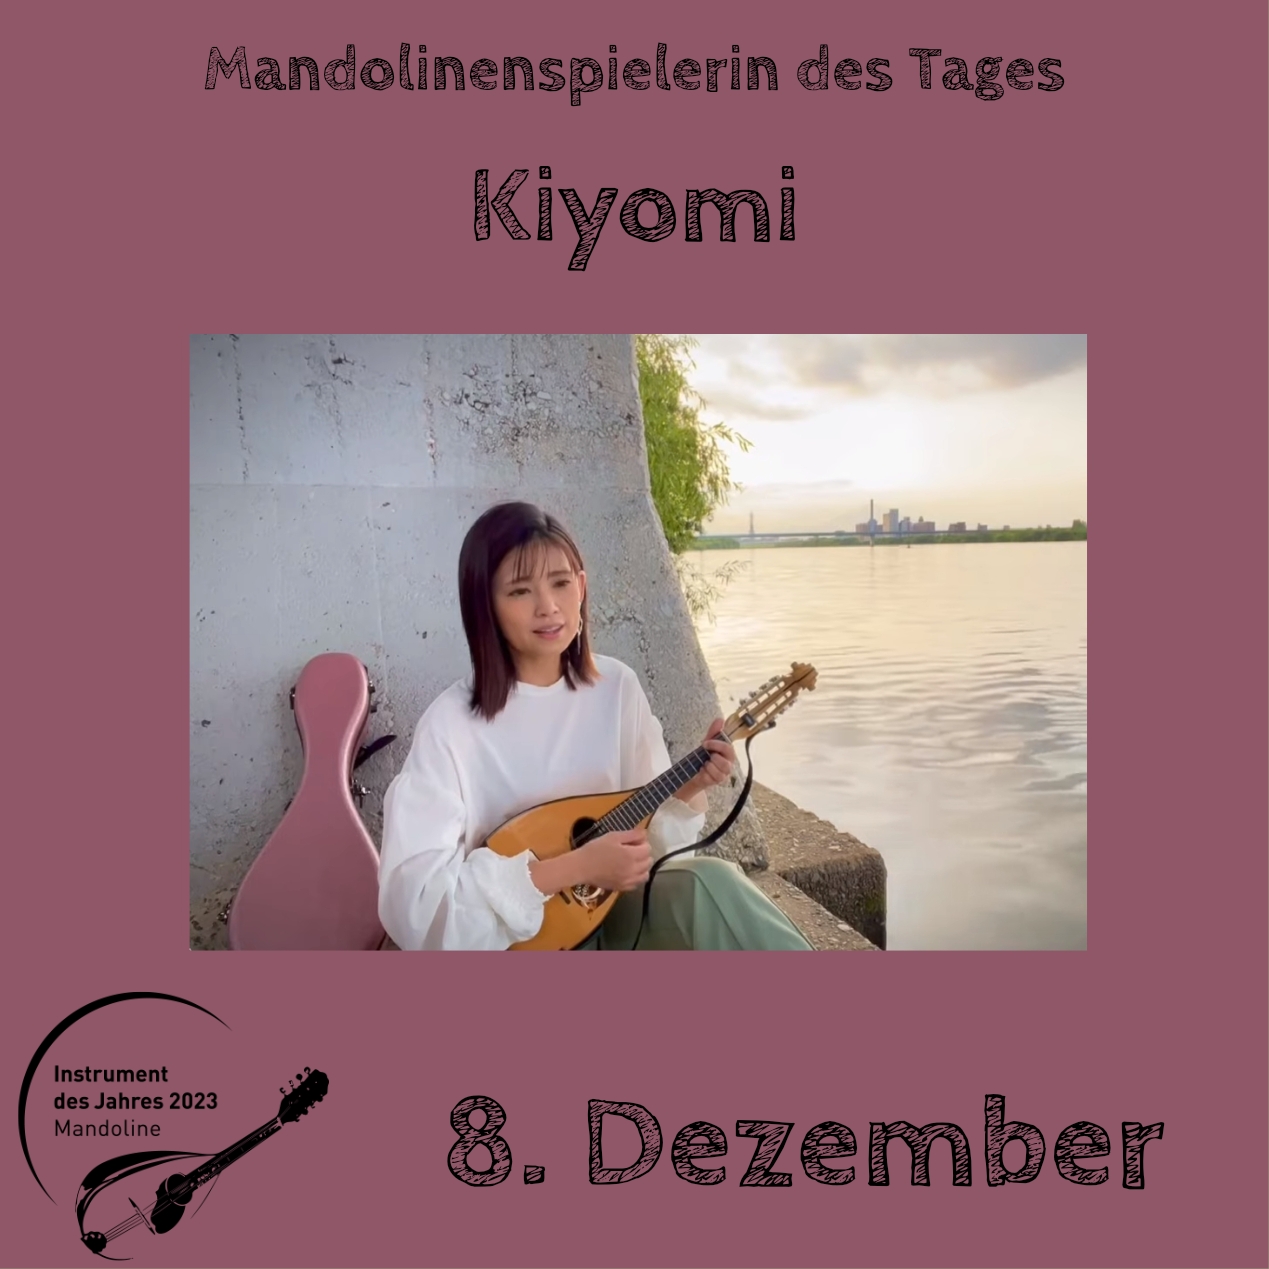 8. Dezember - Kiyomi Instrument des Jahres 2023 Mandolinenspieler Mandolinenspielerin des Tages